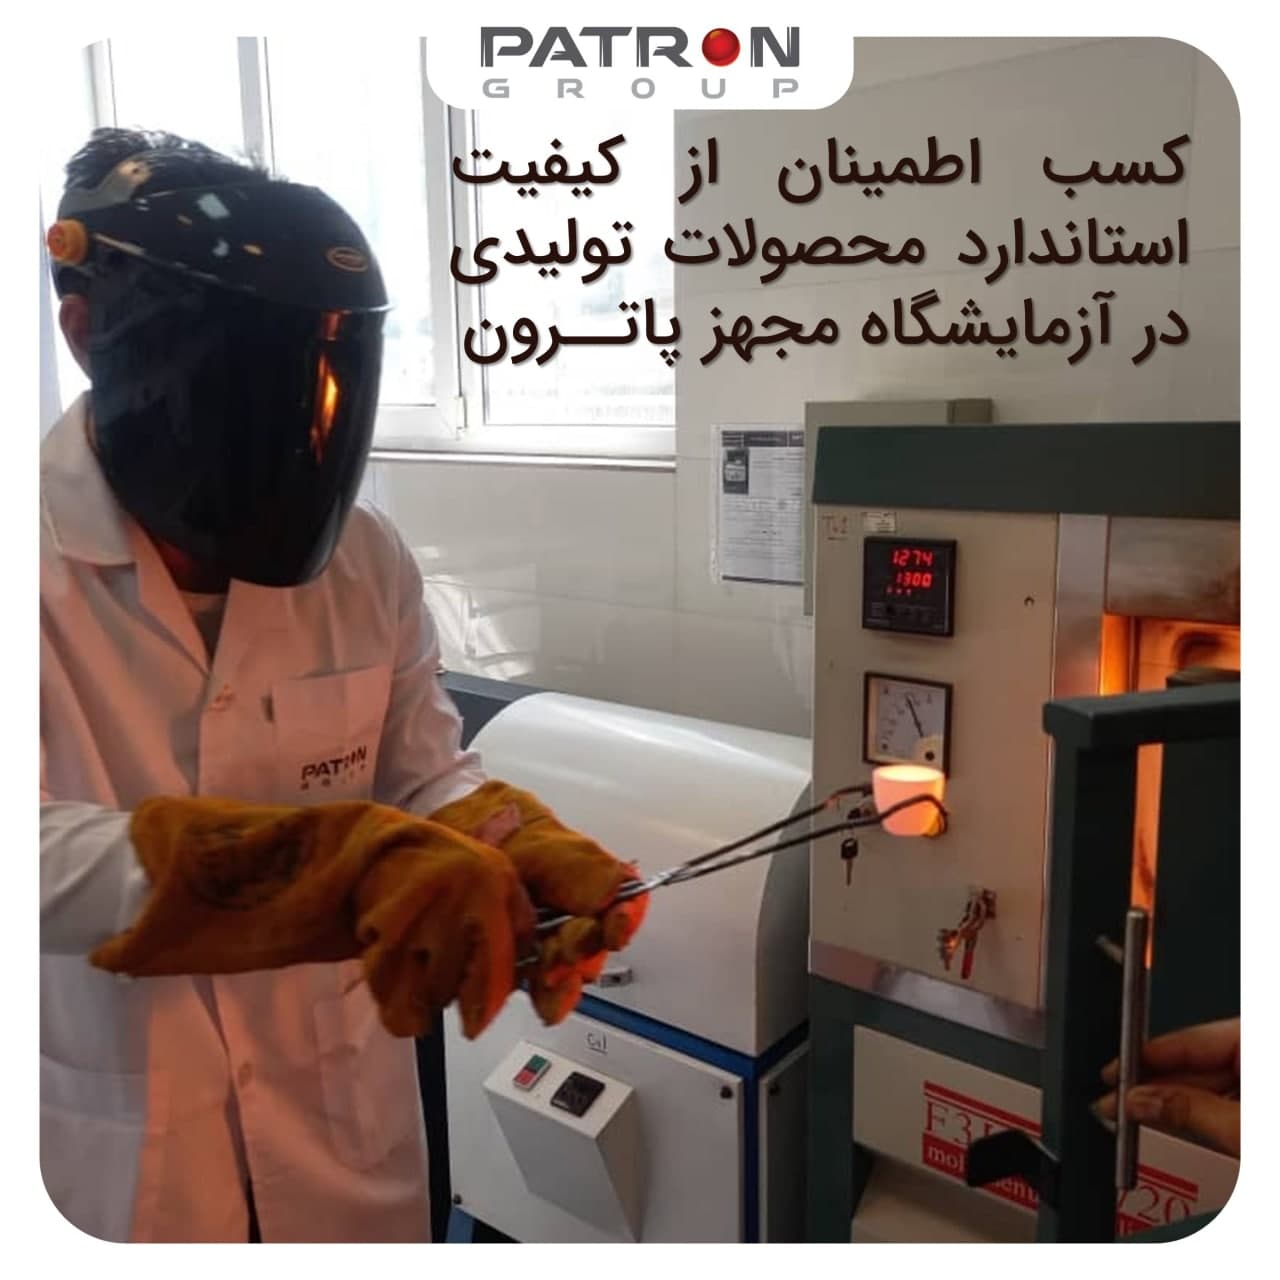 کسب اطمینان از کیفیت استاندارد محصولات تولیدی در آزمایشگاه مجهز پاترون